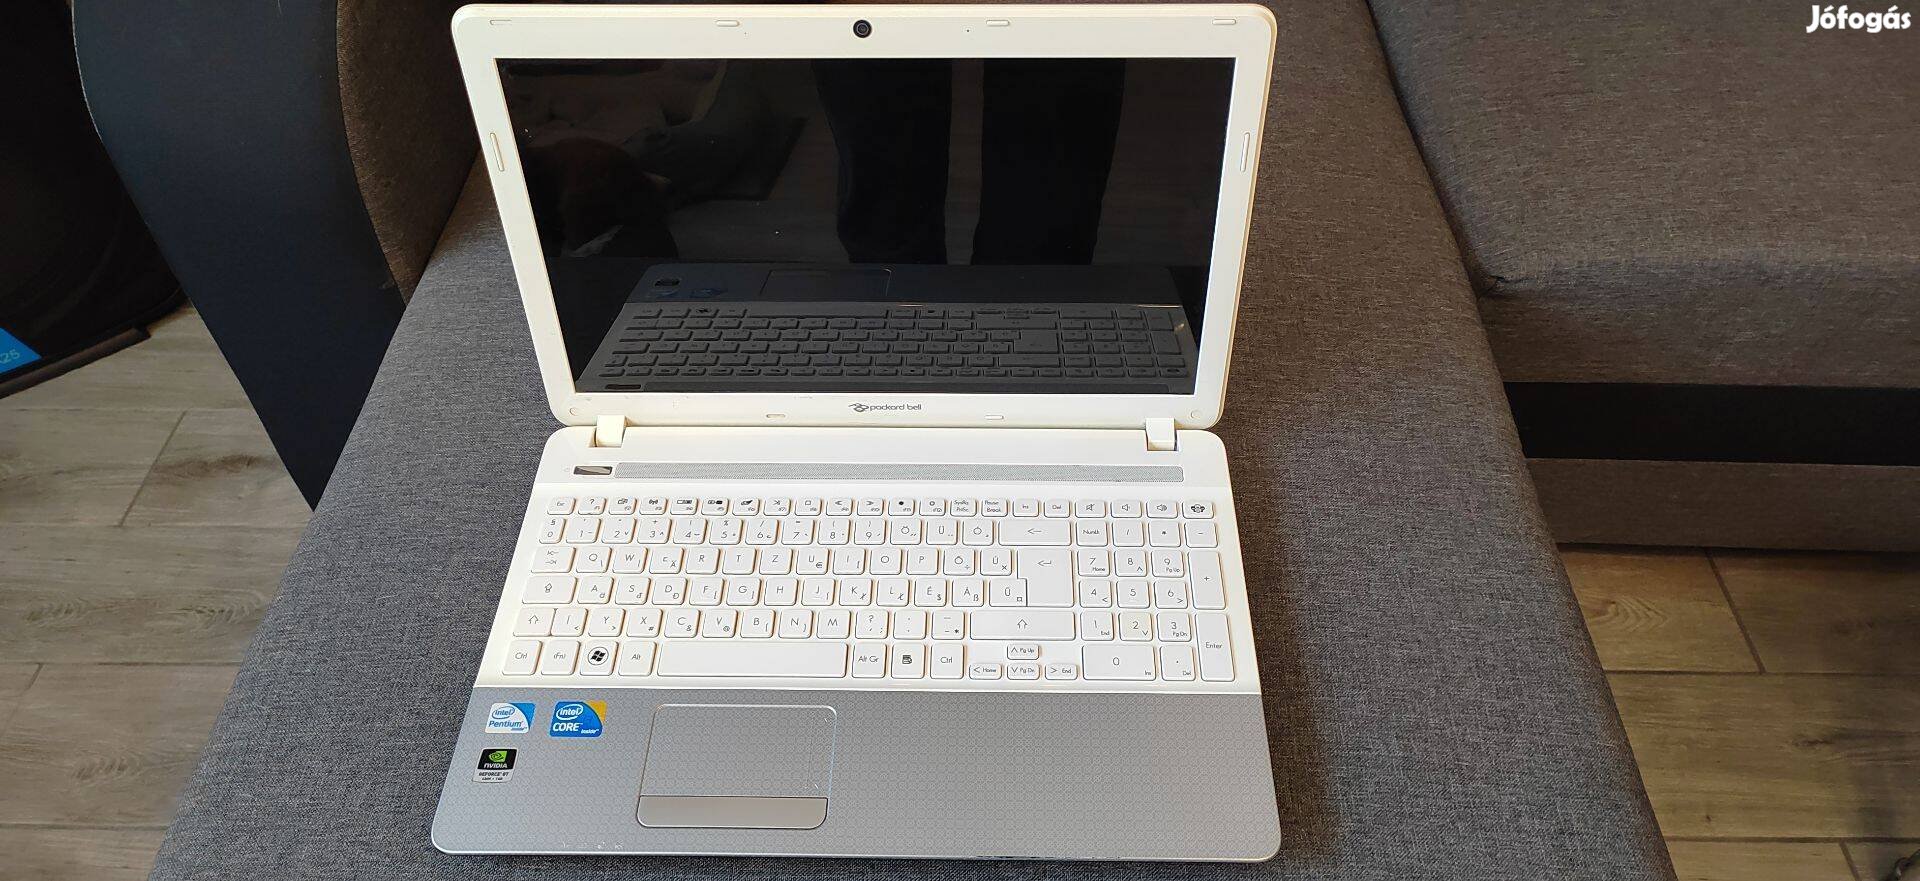 Eladó egy meg kímélt szép állapotú Packard Bell Notebook!